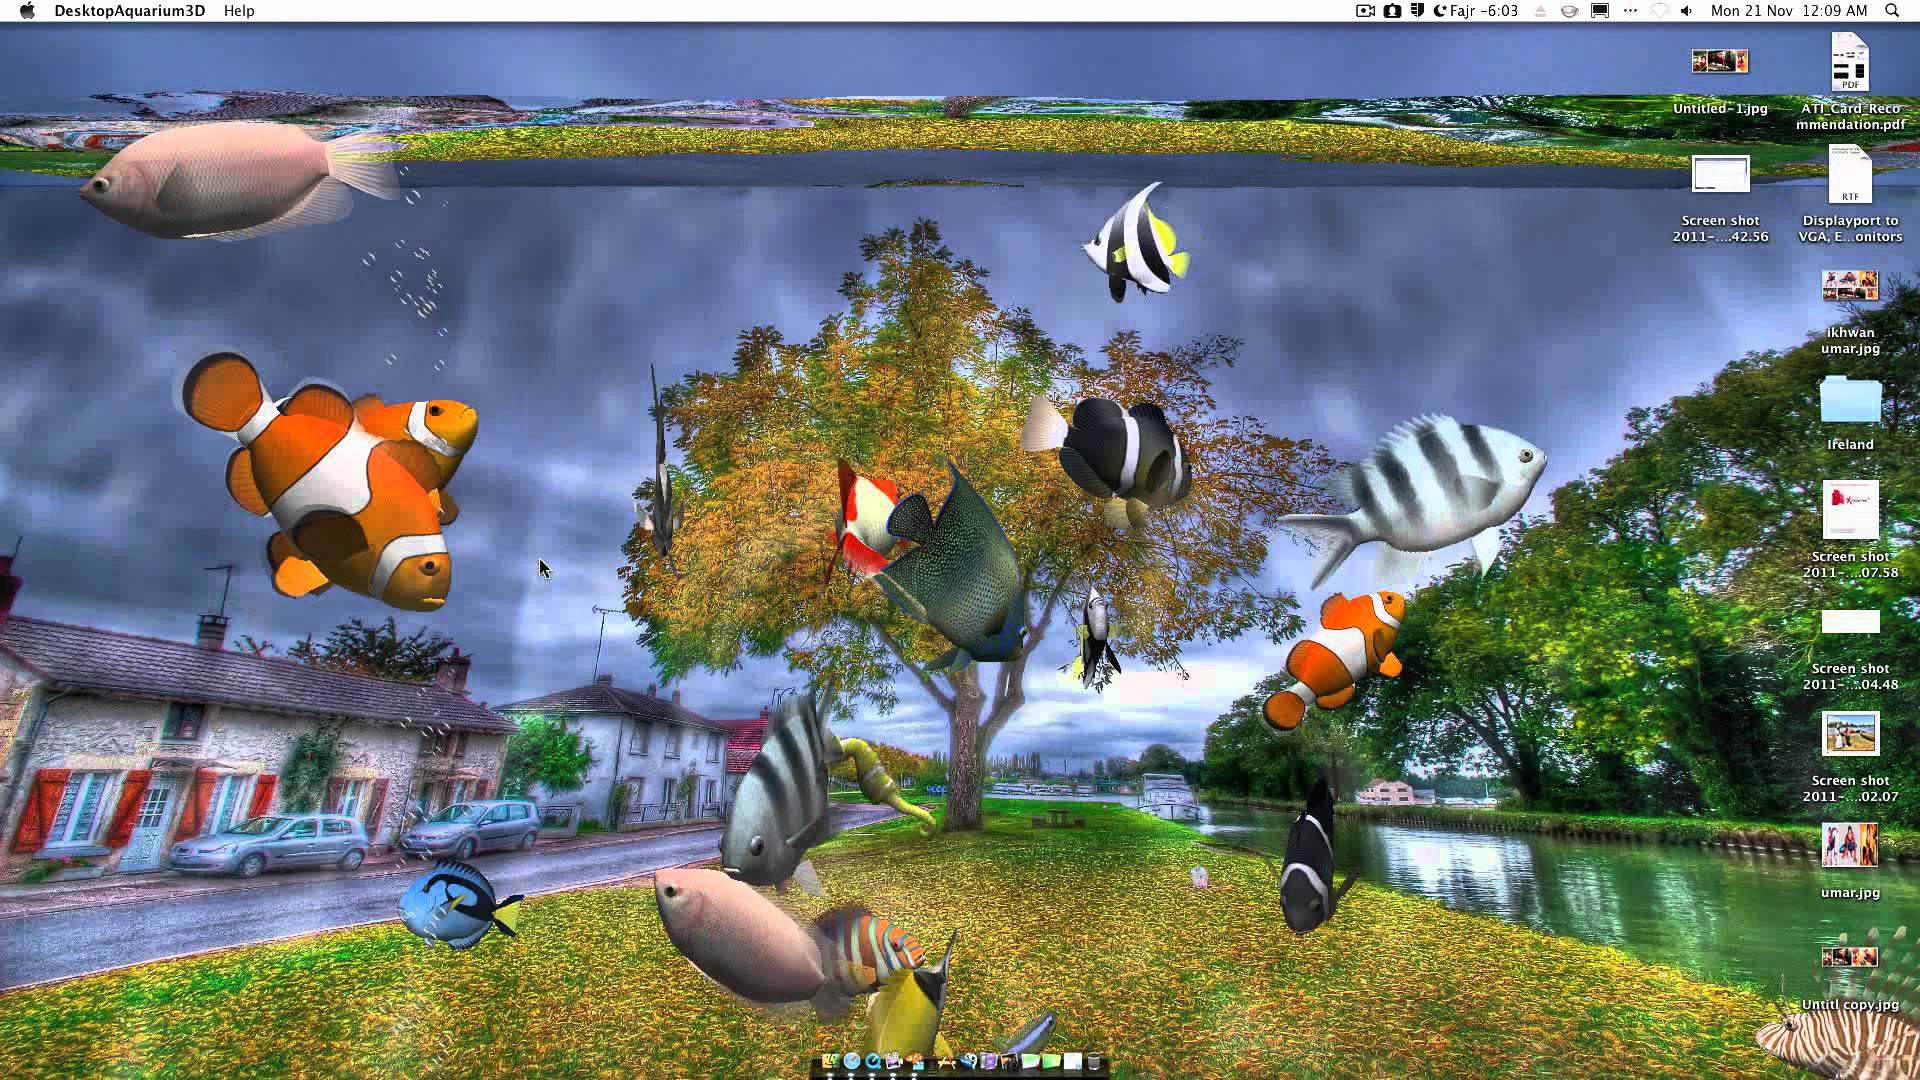 Desktop Aquarium 3D Live Wallpaper on Imac